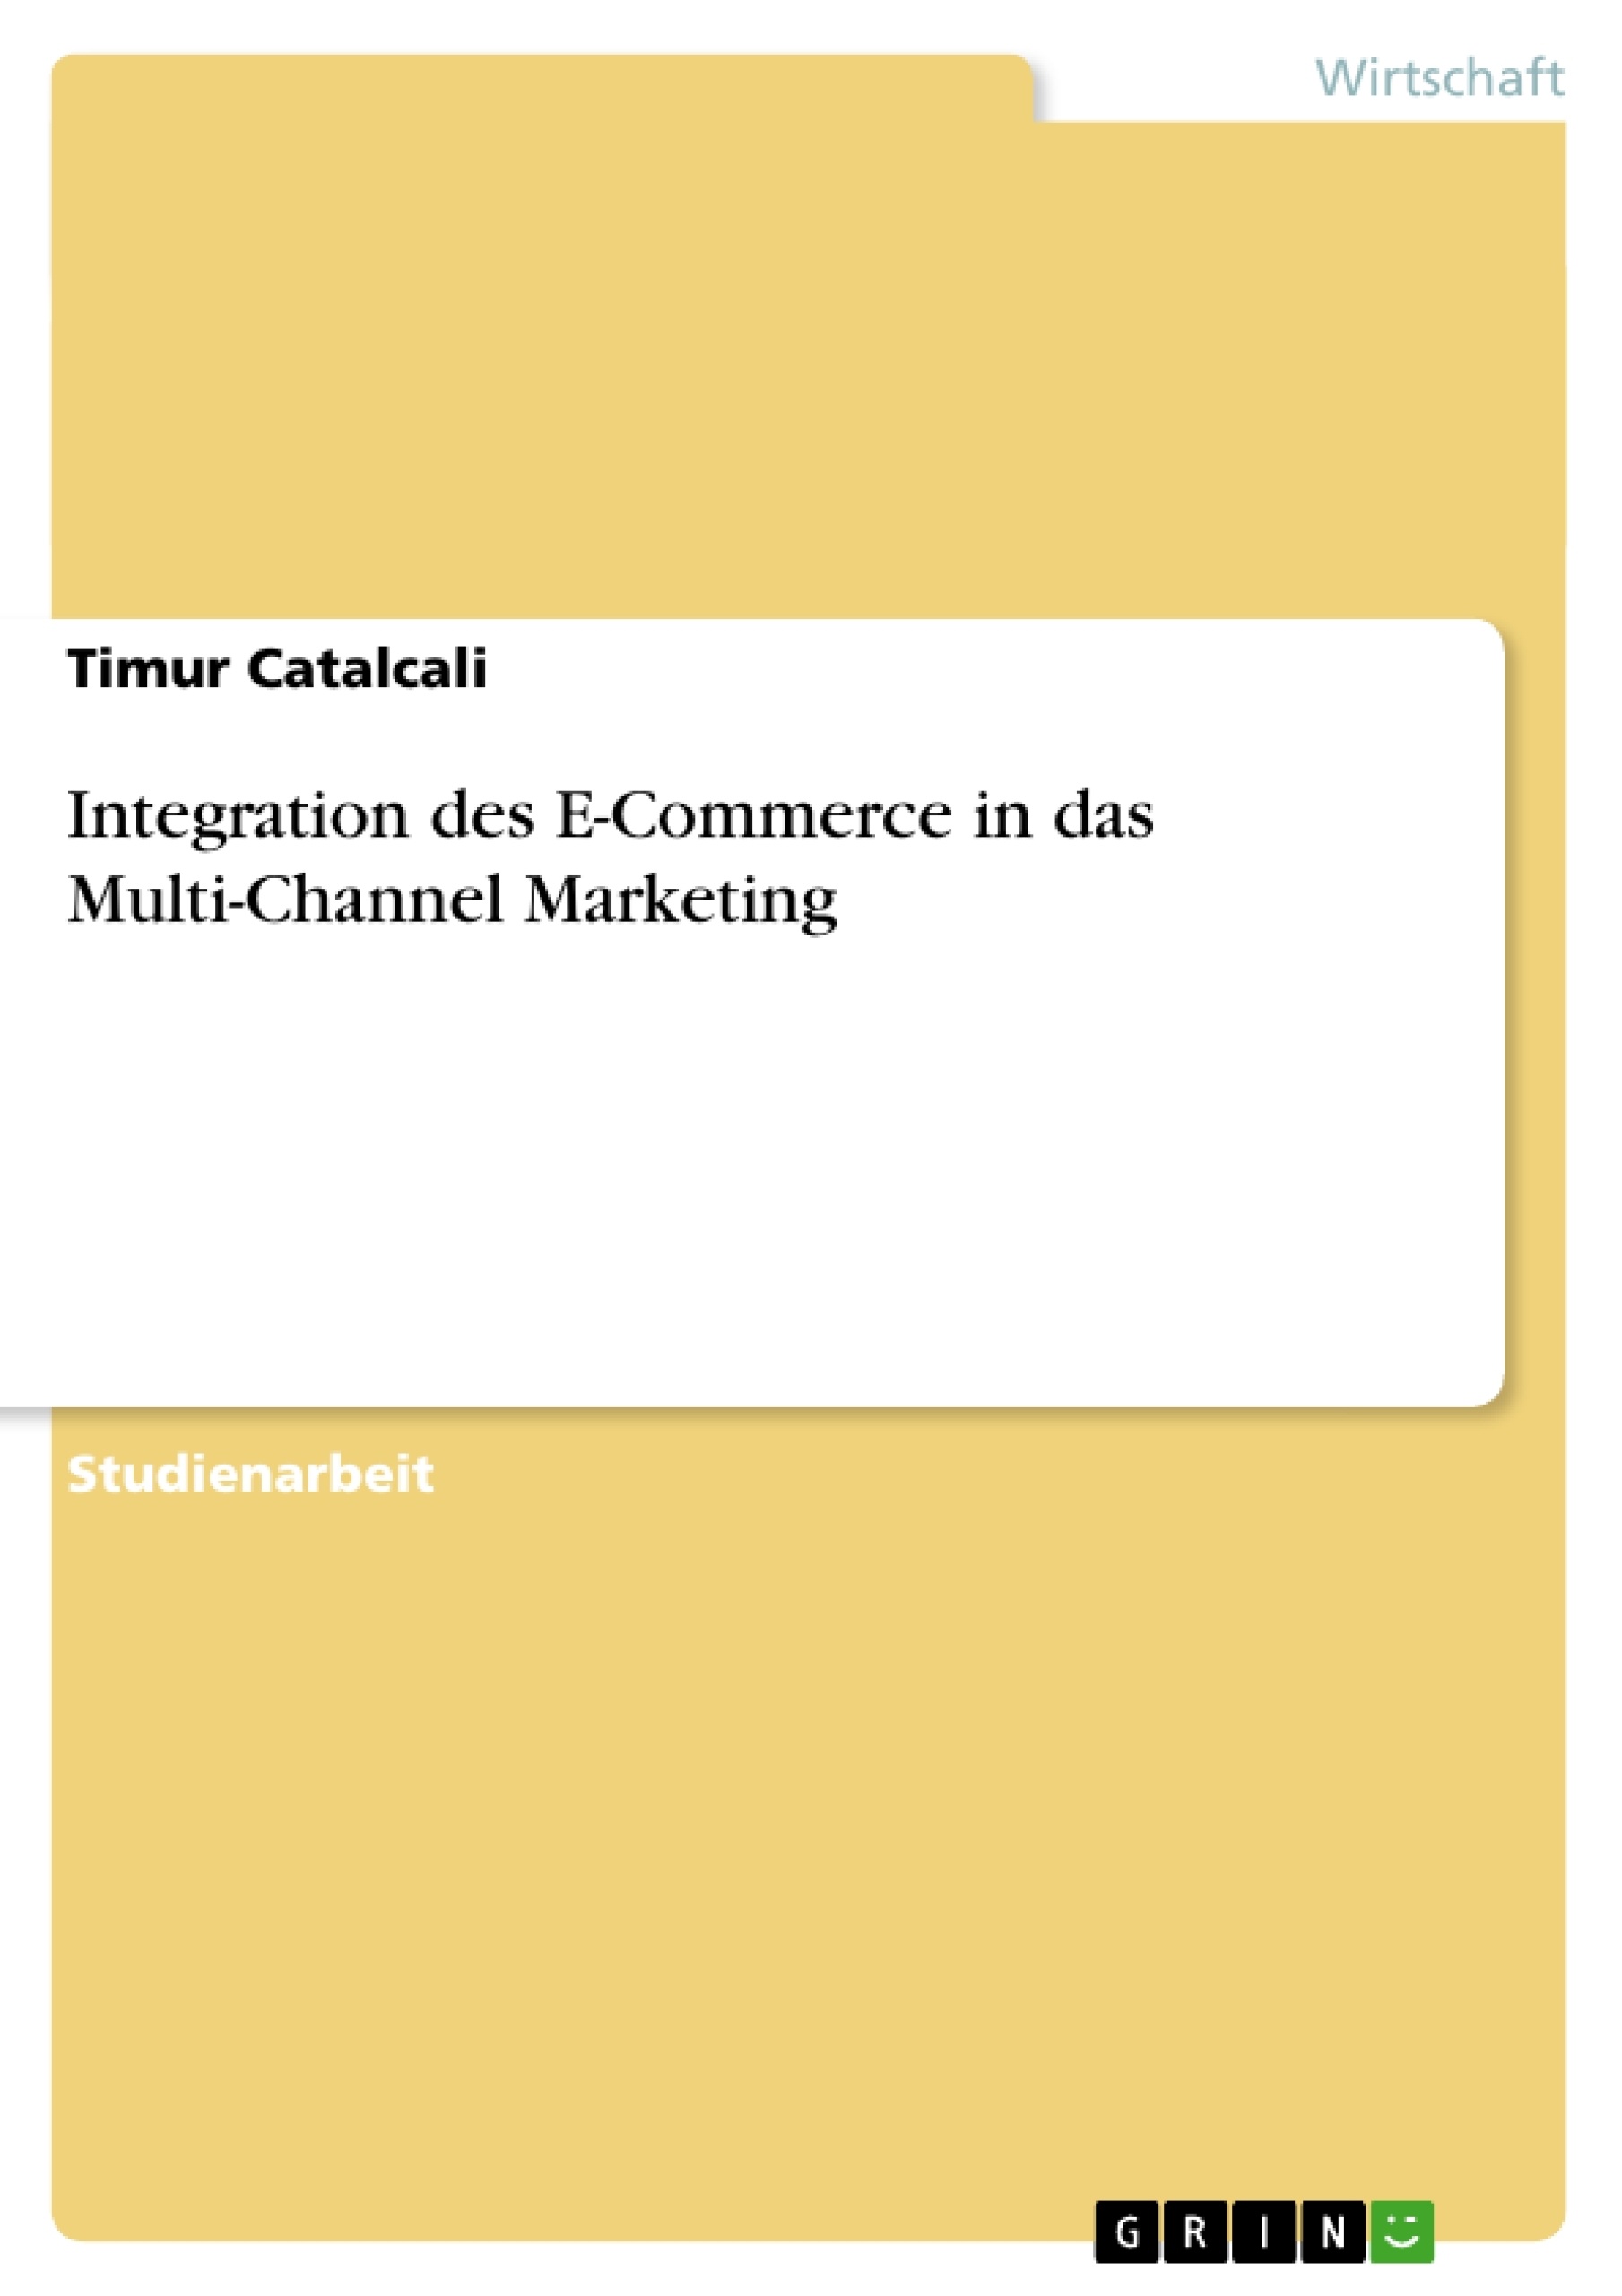 Título: Integration des E-Commerce in das Multi-Channel Marketing